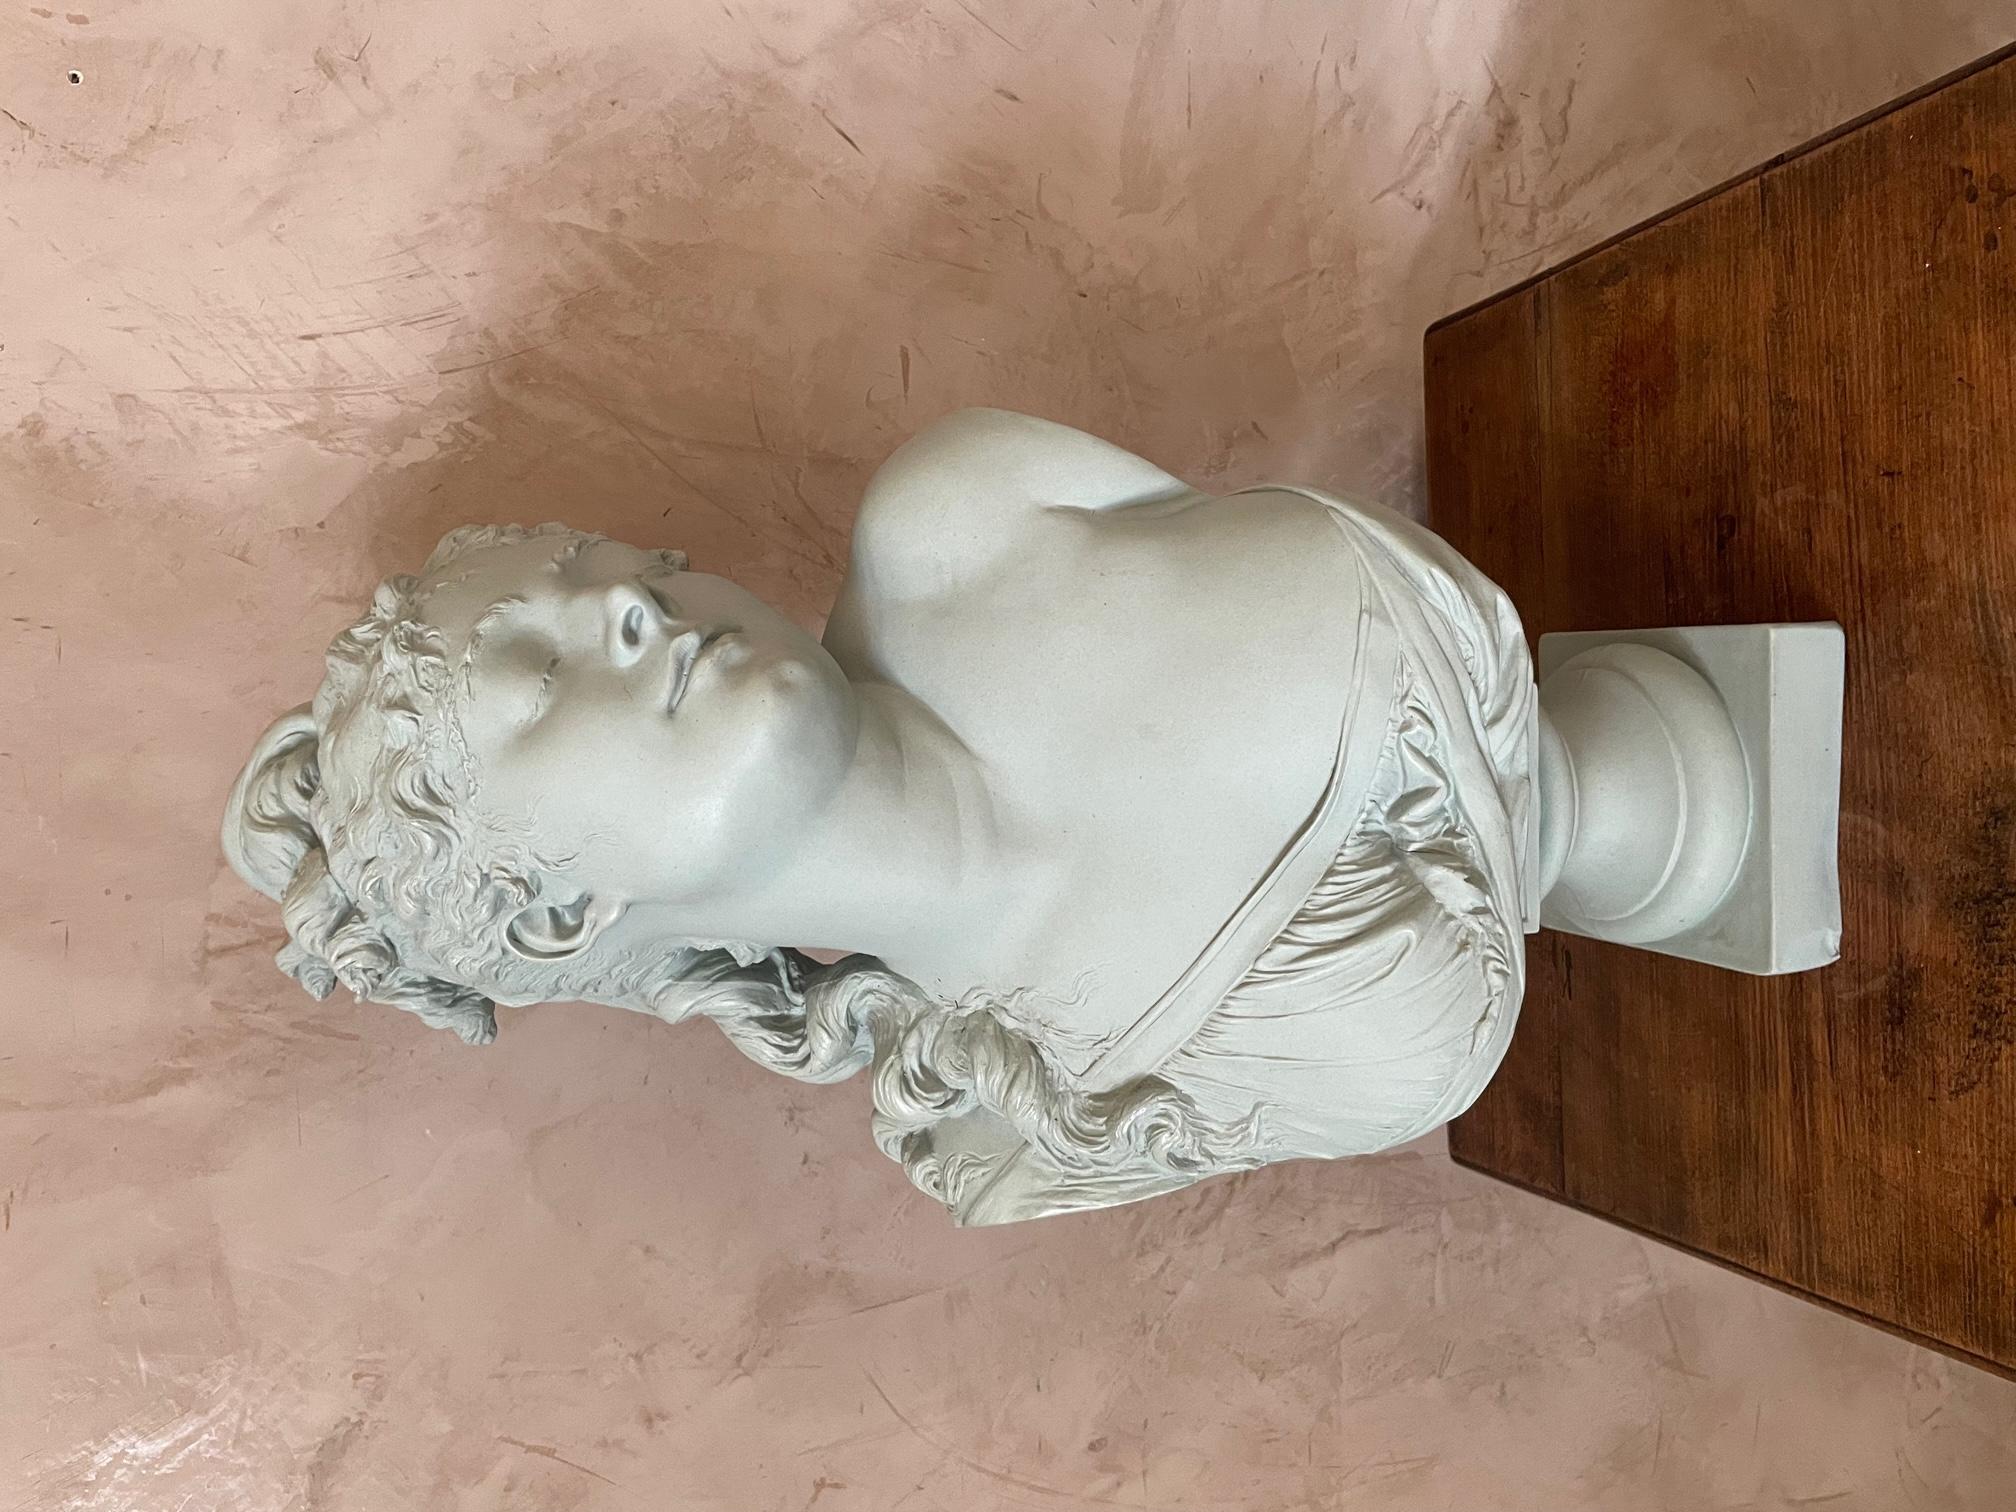 Beau buste de femme en terre cuite d'après Albert-Ernest Carrier-Belleuse (français 1824-1887), signé A. CARRIER au verso.
Patine verte. Des femmes très élégantes. Parfait état.